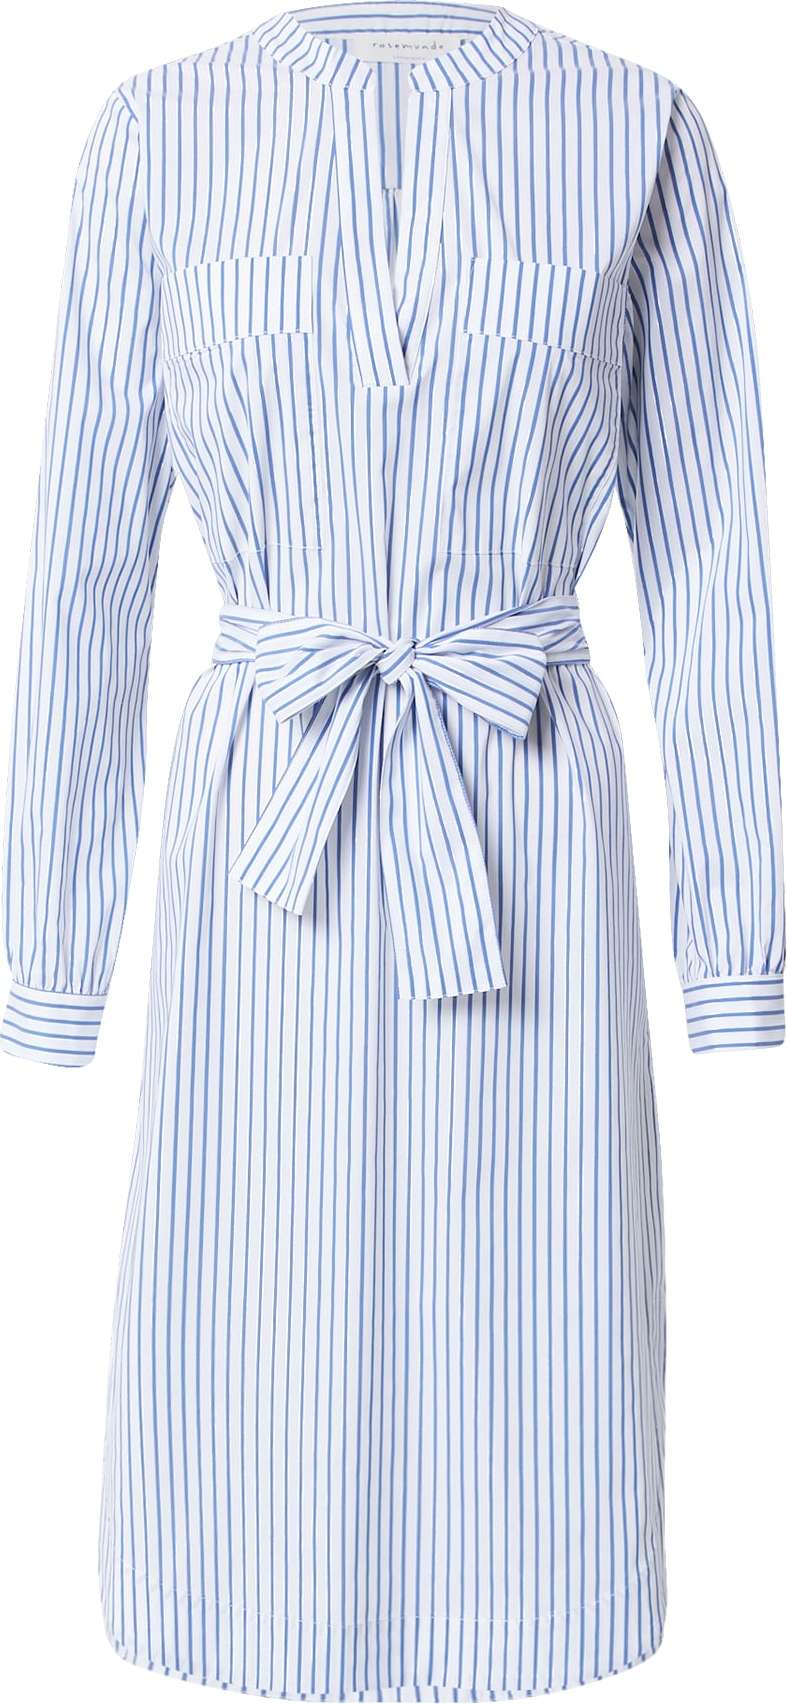 rosemunde Košilové šaty nebeská modř / bílá